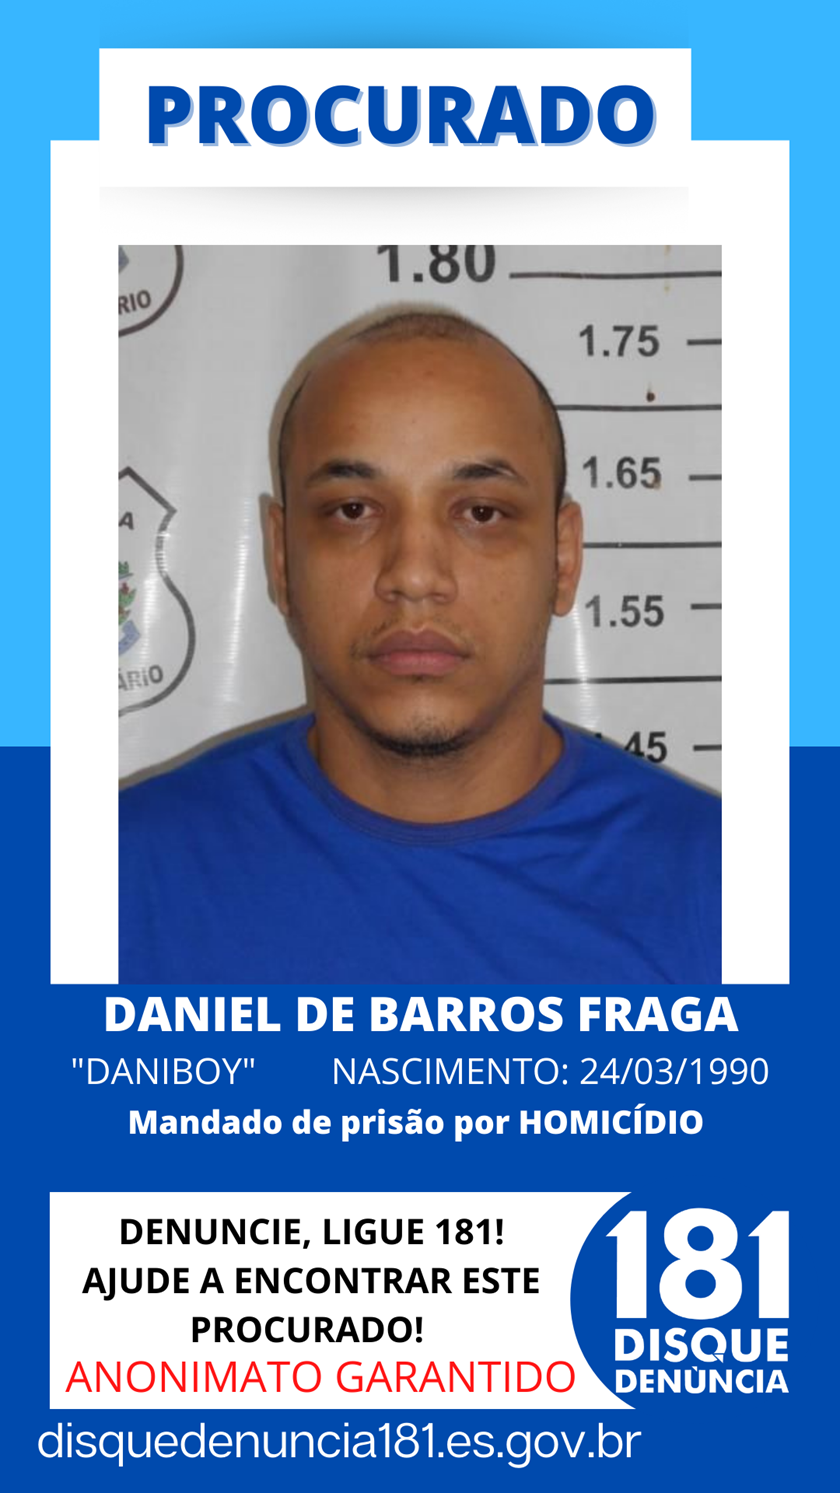 Logomarca - DANIEL DE BARROS FRAGA - vulgo DANIBOY